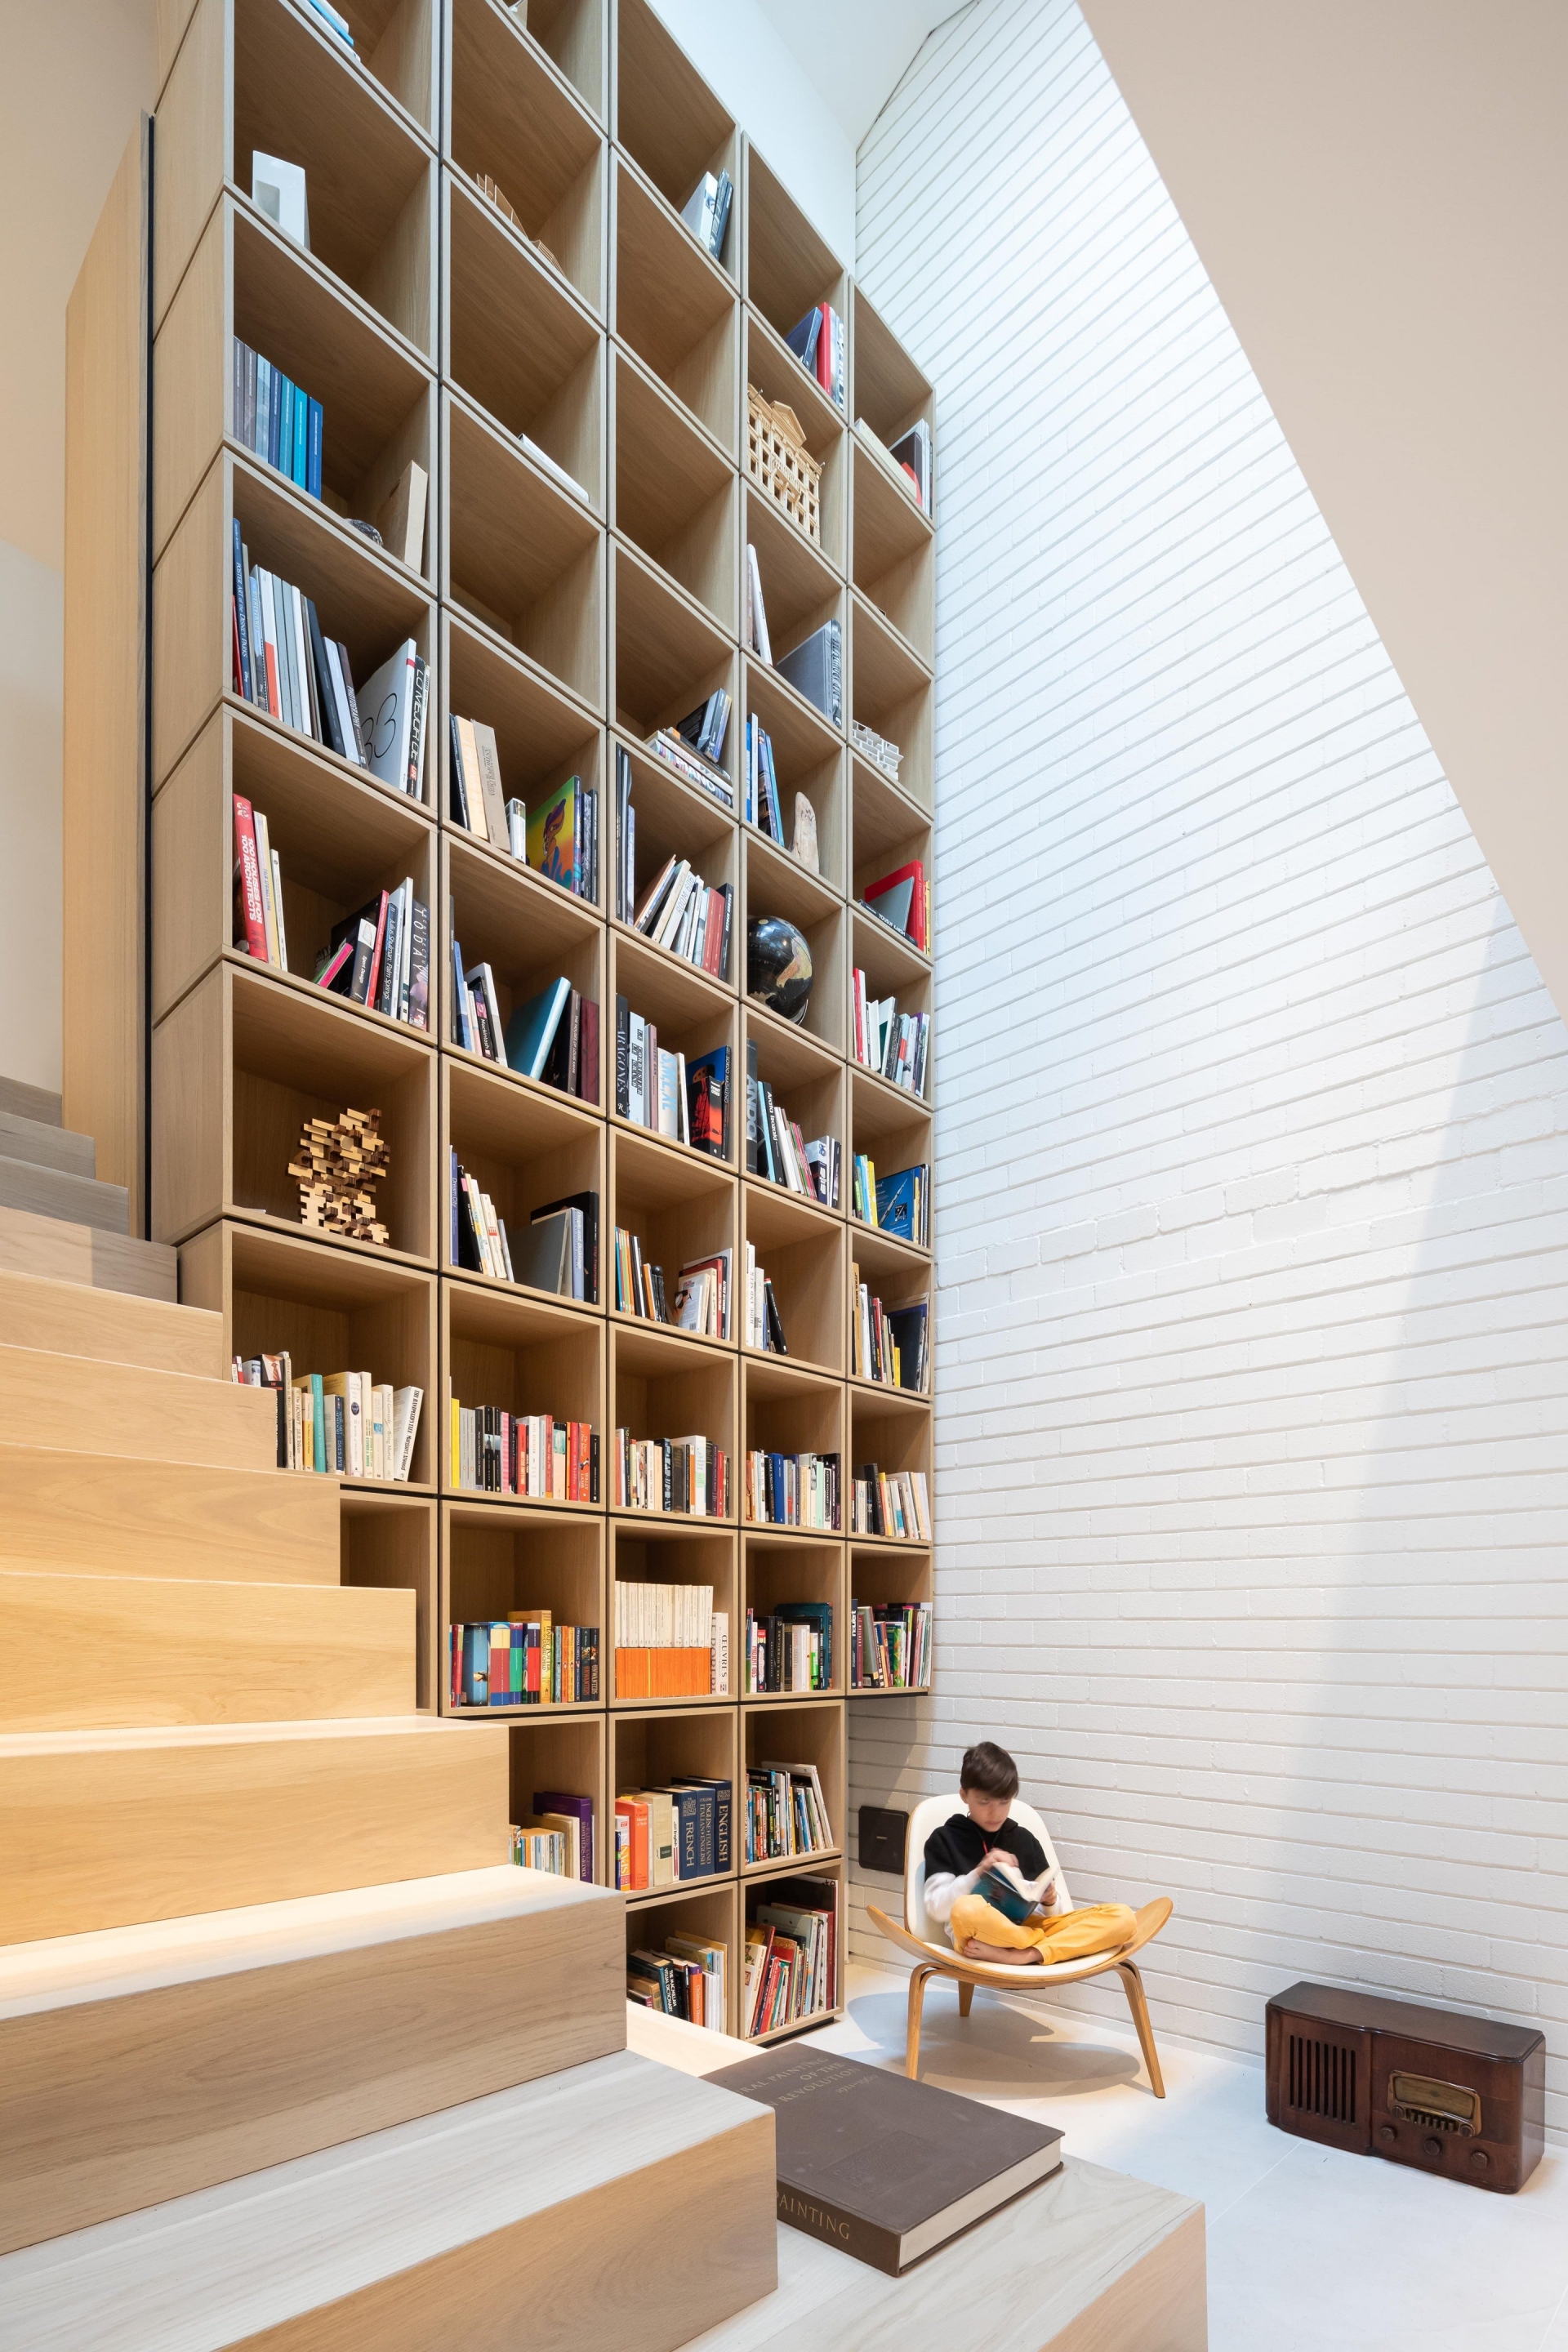 Thư viện mini trong ngôi nhà Vancouver (Canada) do RSAAW Studio thiết kế được hình thành bởi các hộp gỗ sáng màu xếp chồng lên nhau. Các tủ gỗ được đóng vào sát cầu thang tạo thành bức tường nối cả tầng 1 và tầng 2 của ngôi nhà.